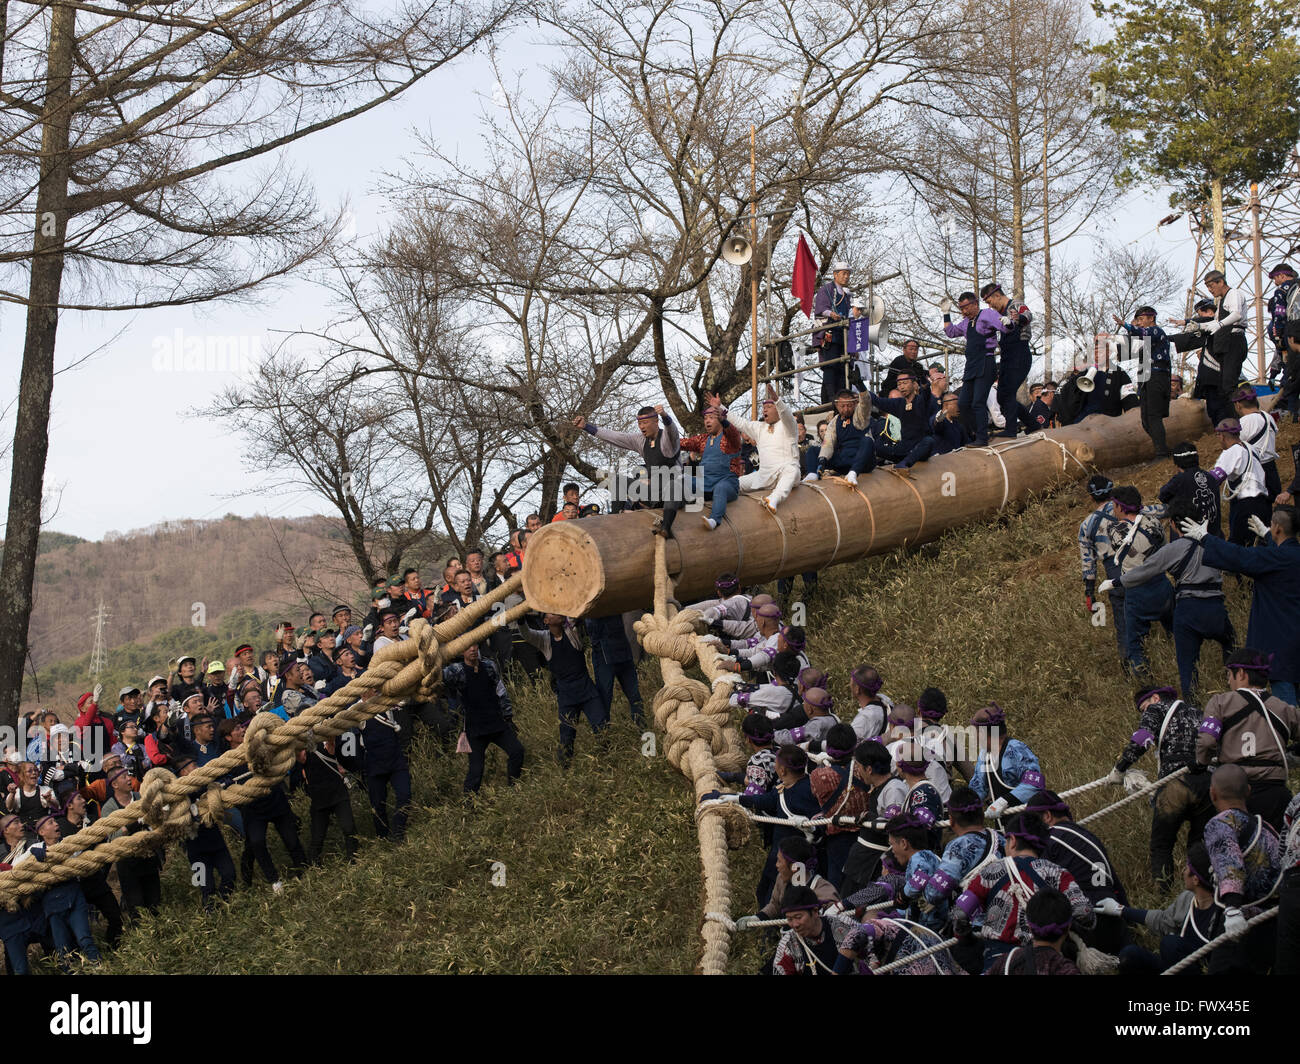 Onbashira Festival à Suwa, Nagano Prefecture, Japan. Le 08 avril 2016 Les hommes risquent leur vie pour monter sur le tronc des arbres sur une colline escarpée. Le tronc des arbres deviendra piliers du sanctuaire local. Le festival a lieu tous les 7 ans, et il est dit à plus de 1200 ans. Crédit : Chris Wilson/Alamy Live News Banque D'Images